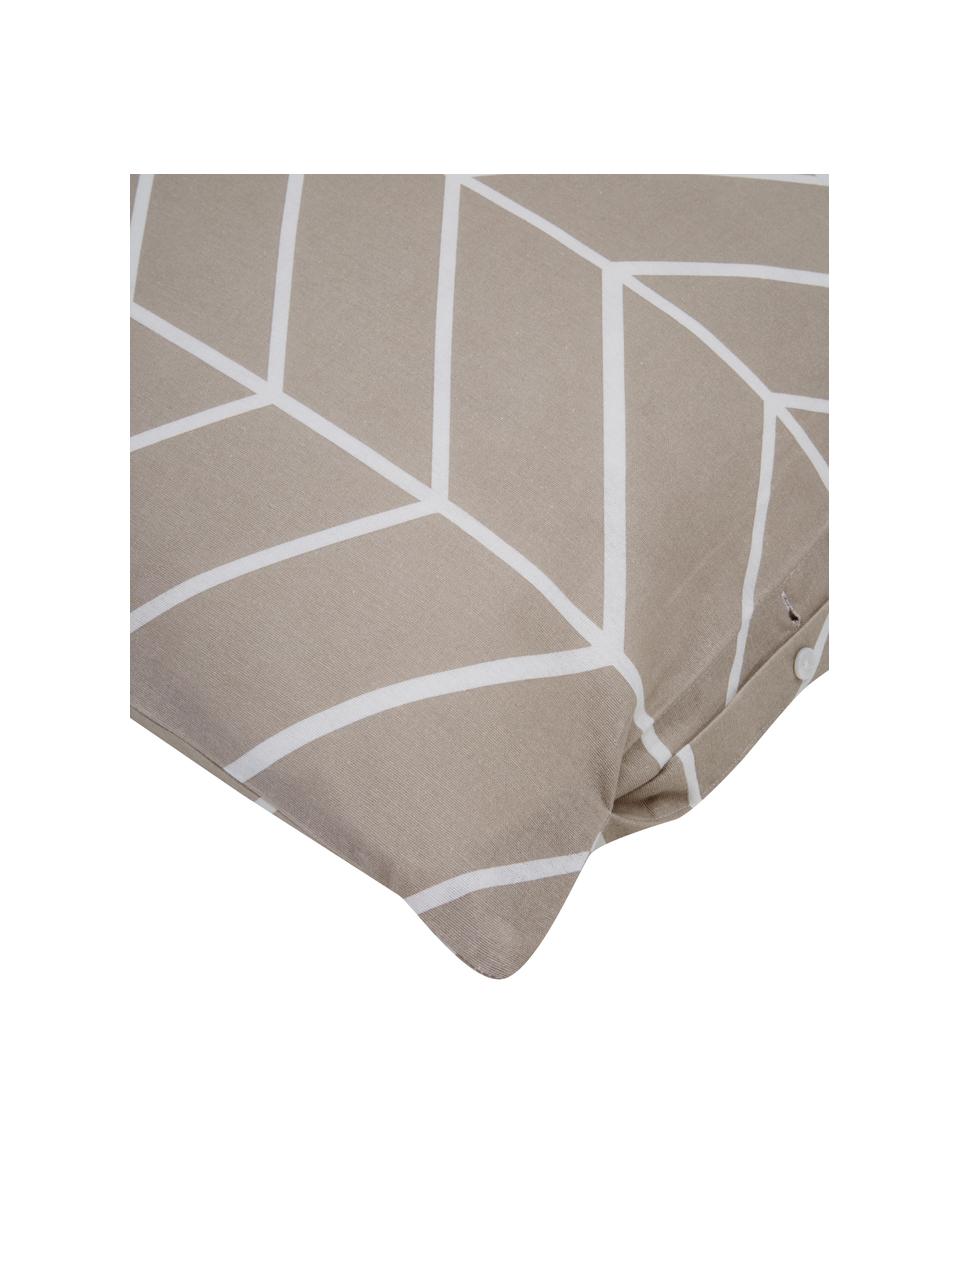 Flanell-Bettwäsche Yule mit grafischem Muster, Webart: Flanell Flanell ist ein k, Nougat, Weiss, 135 x 200 cm + 1 Kissen 80 x 80 cm